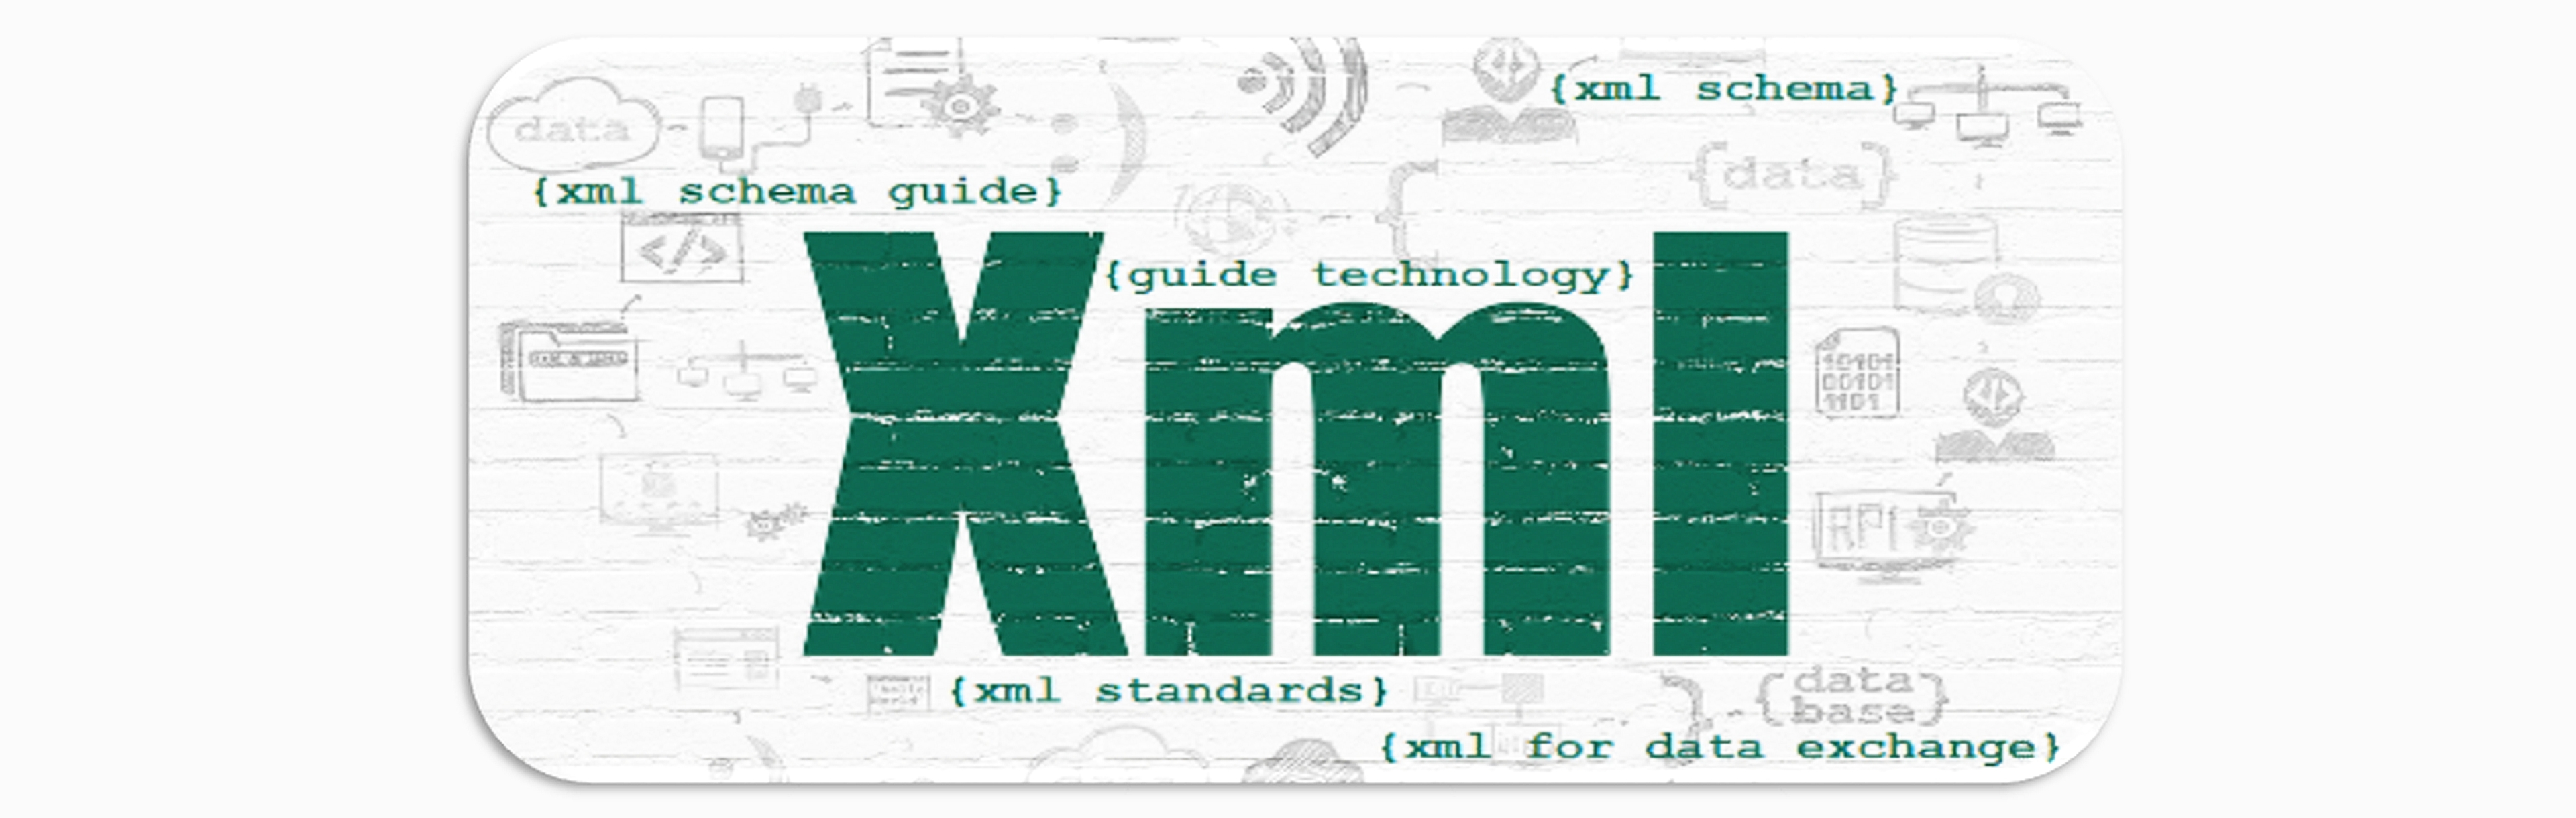 Das Bild zeigt die Abkürzung XML mit großen Buchstaben umgeben von diversen blassen Icons und Texten in geschweiften Klammern zum Thema XML.